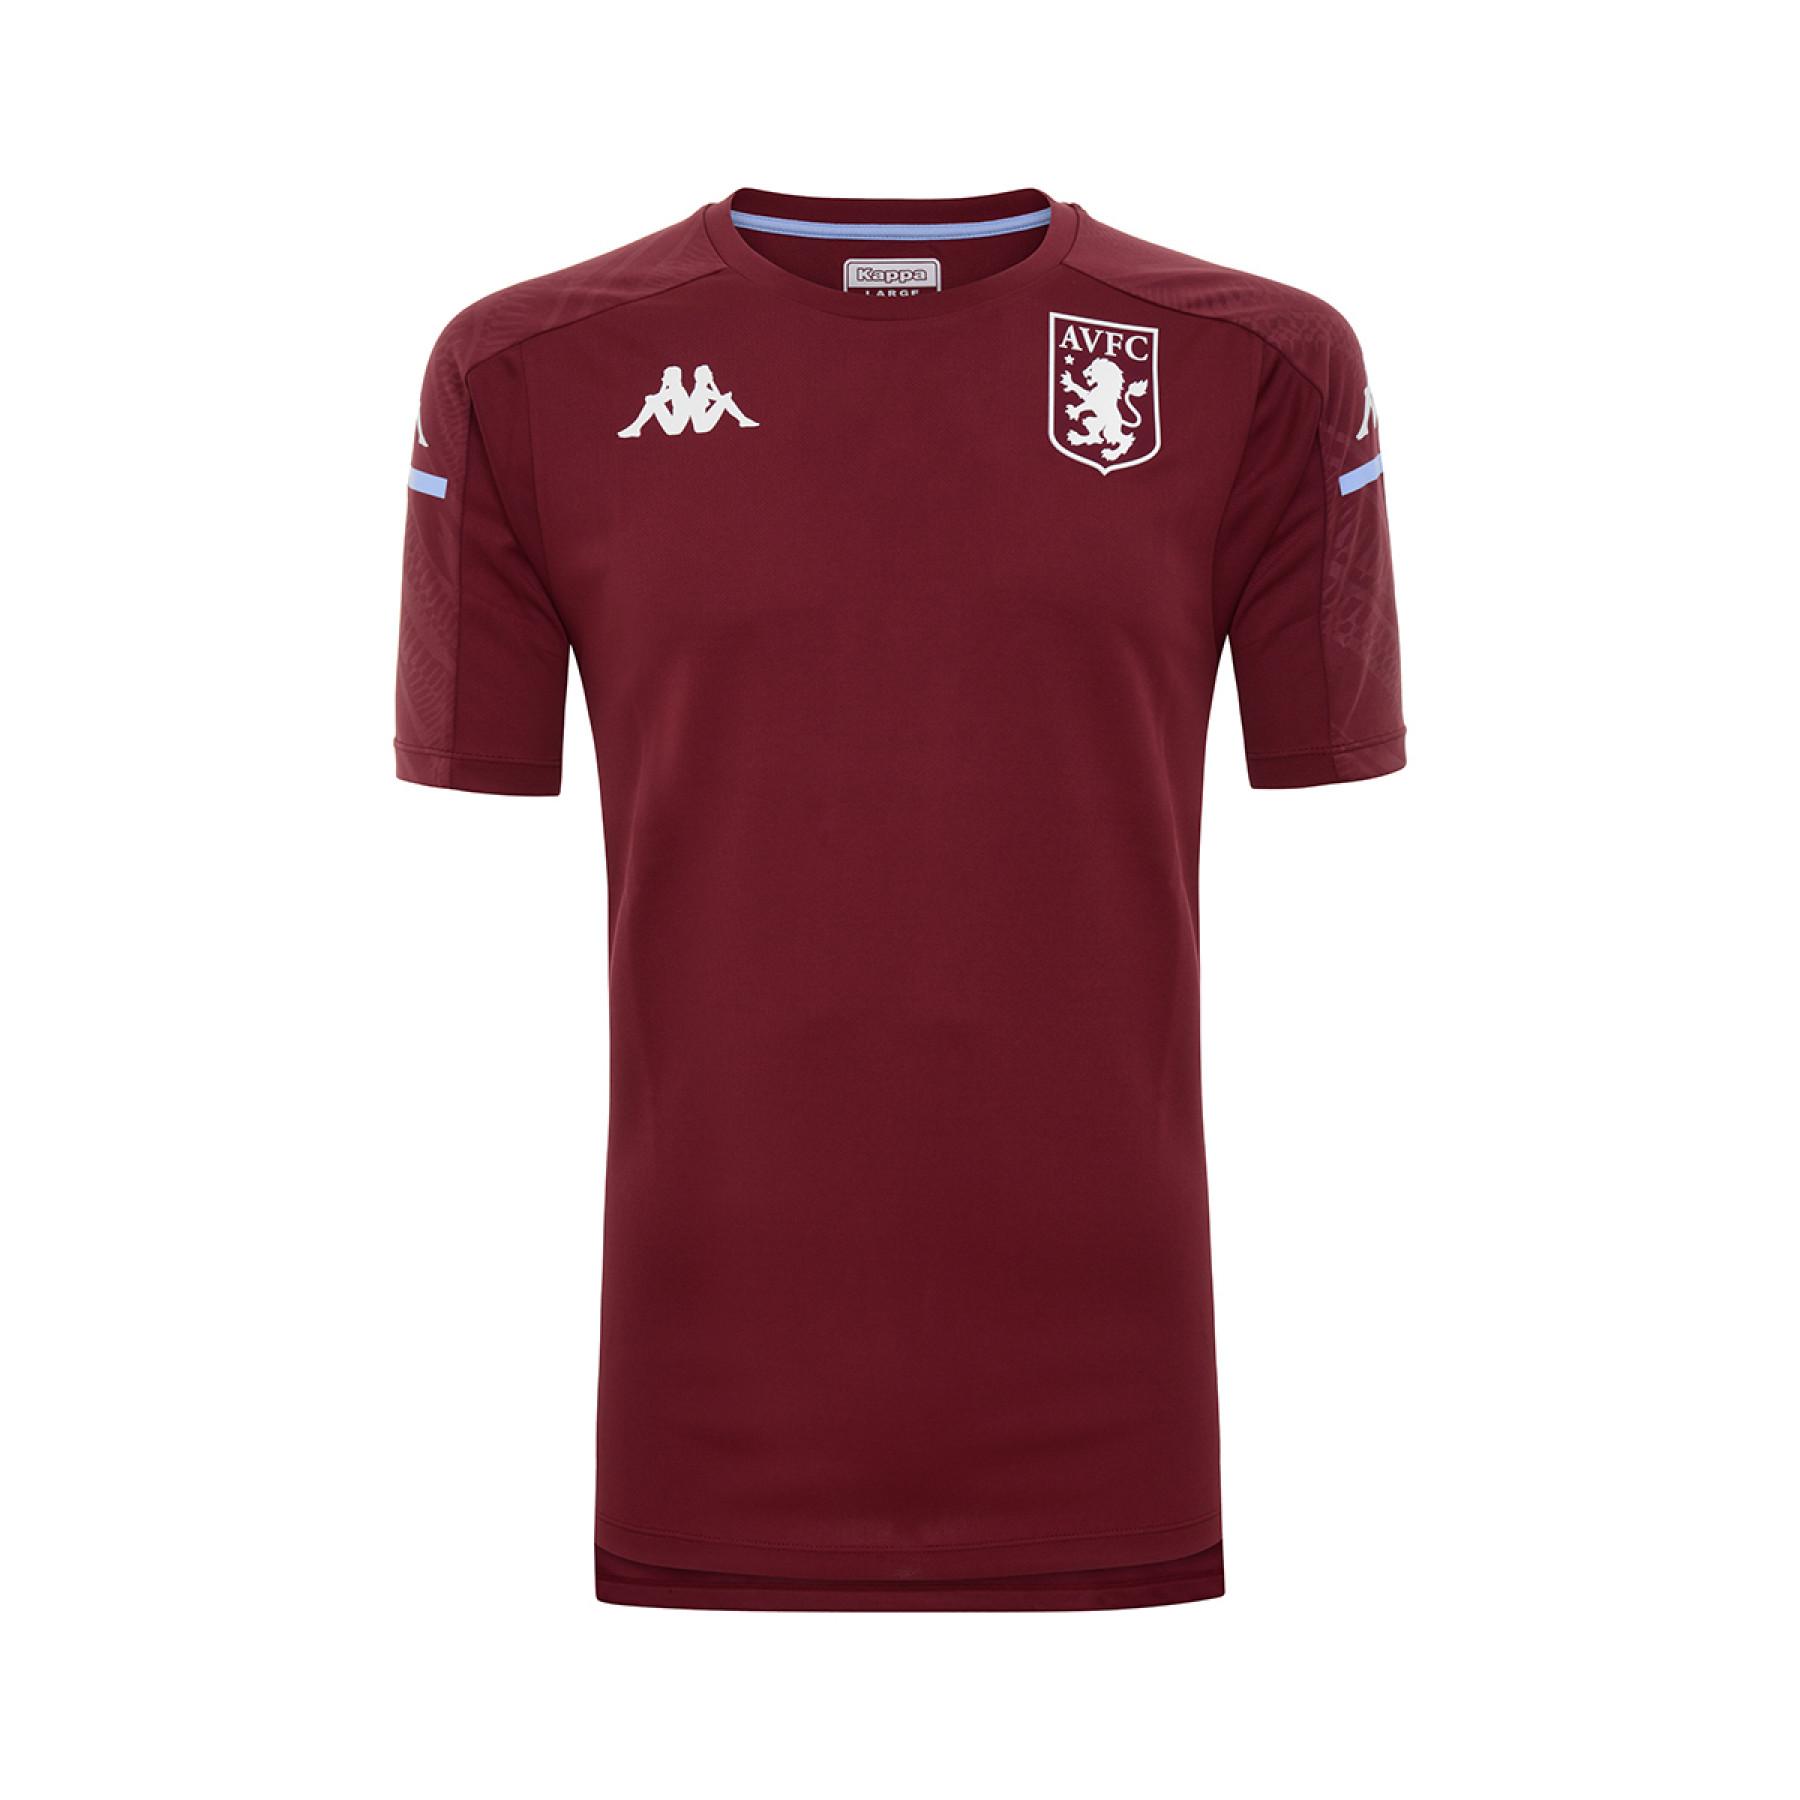 Camiseta Aston Villa FC 2020/21 aboes pro 4